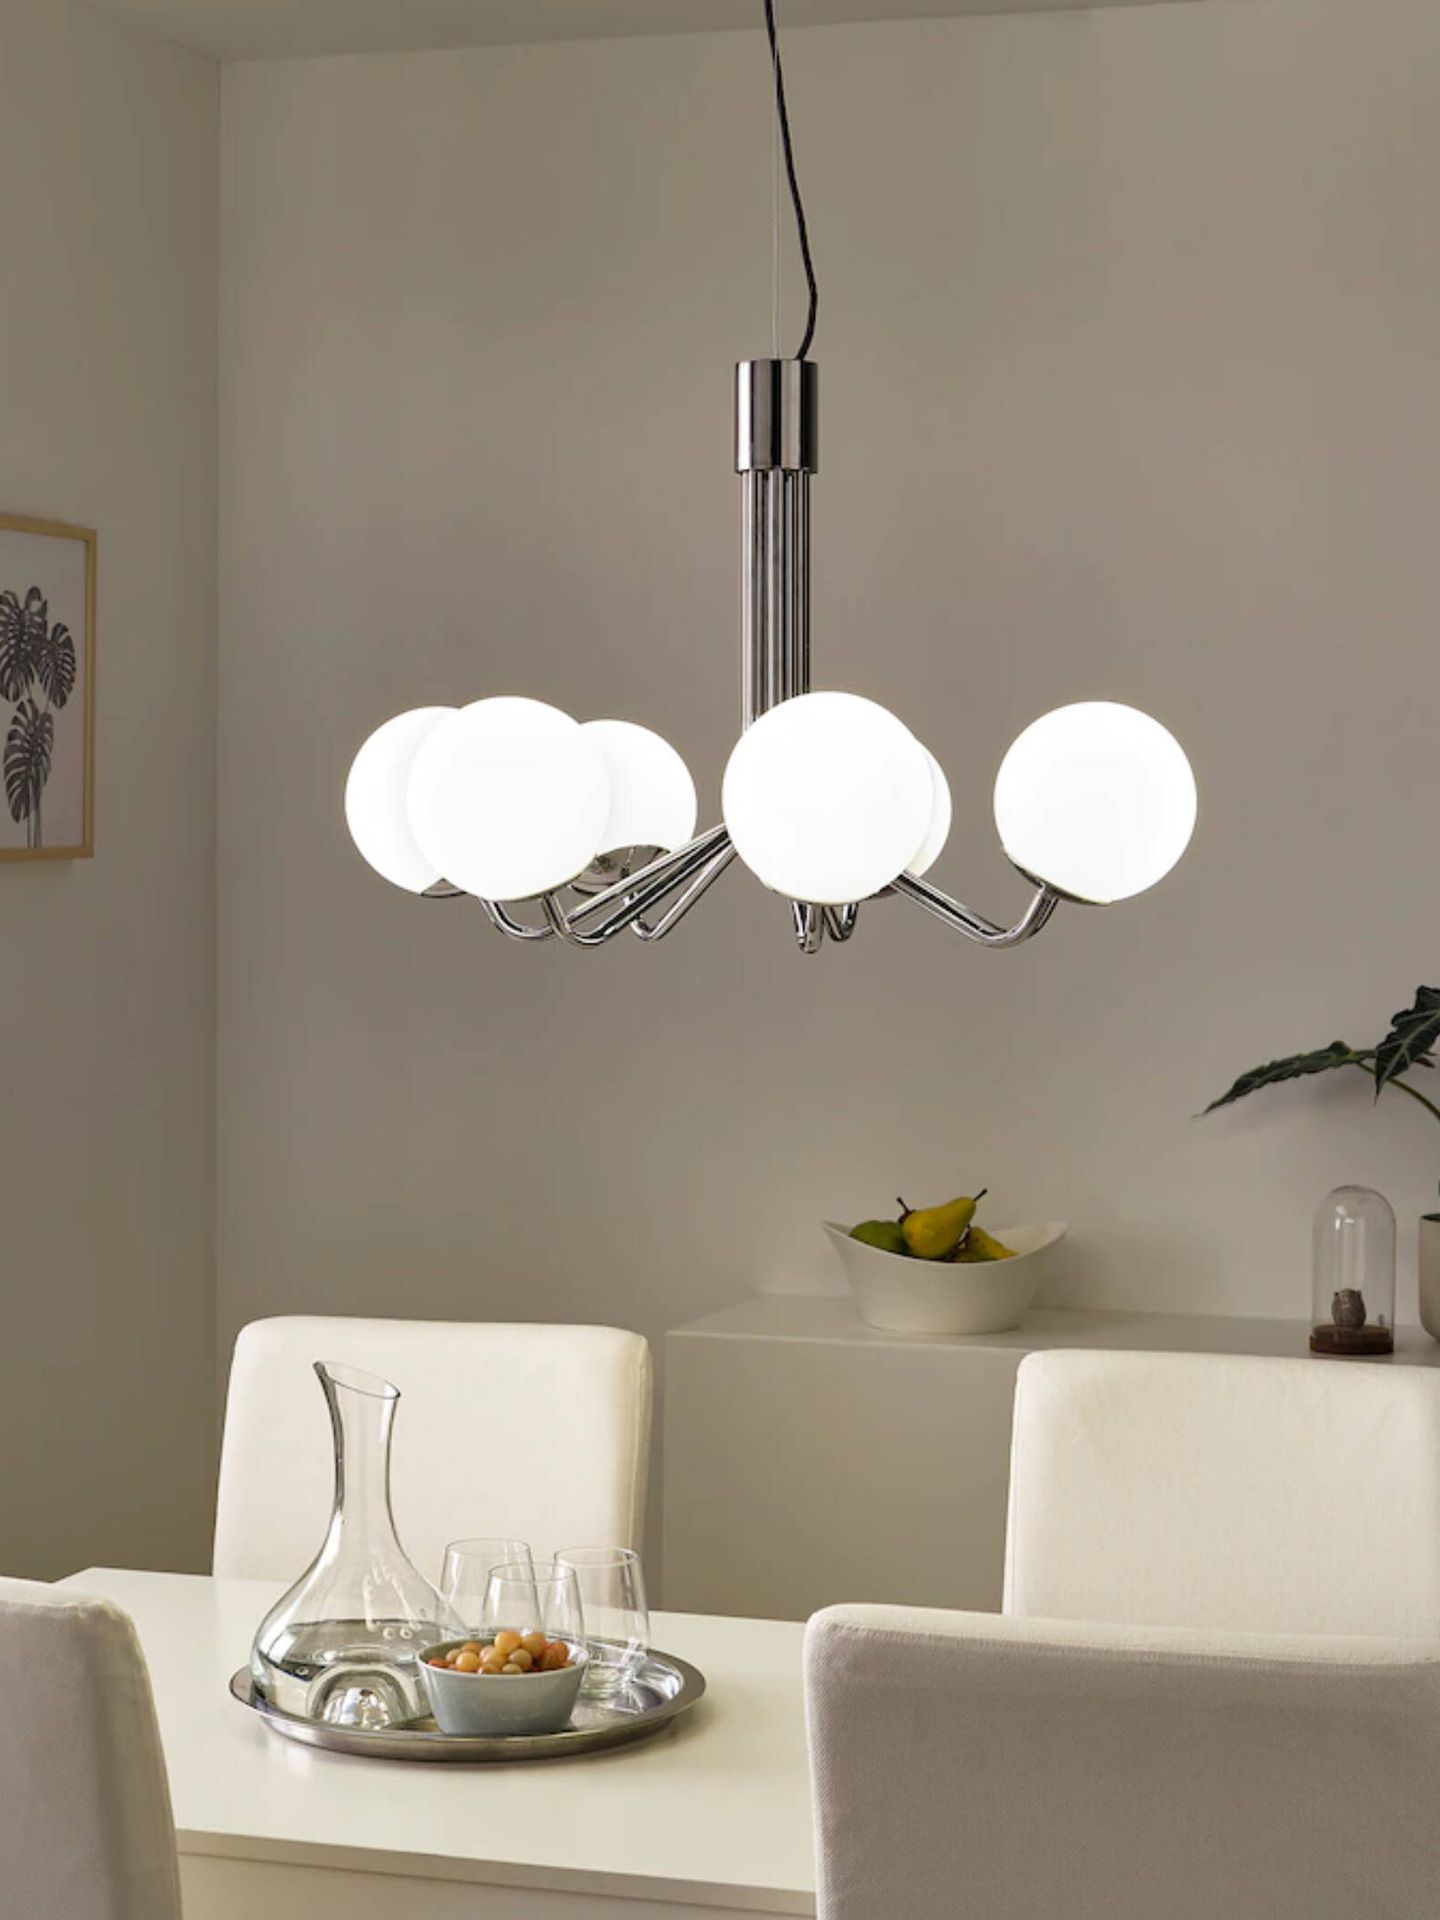 Lámparas de chandelier low cost para dar un toque chic a tu casa. (Cortesía/Ikea)